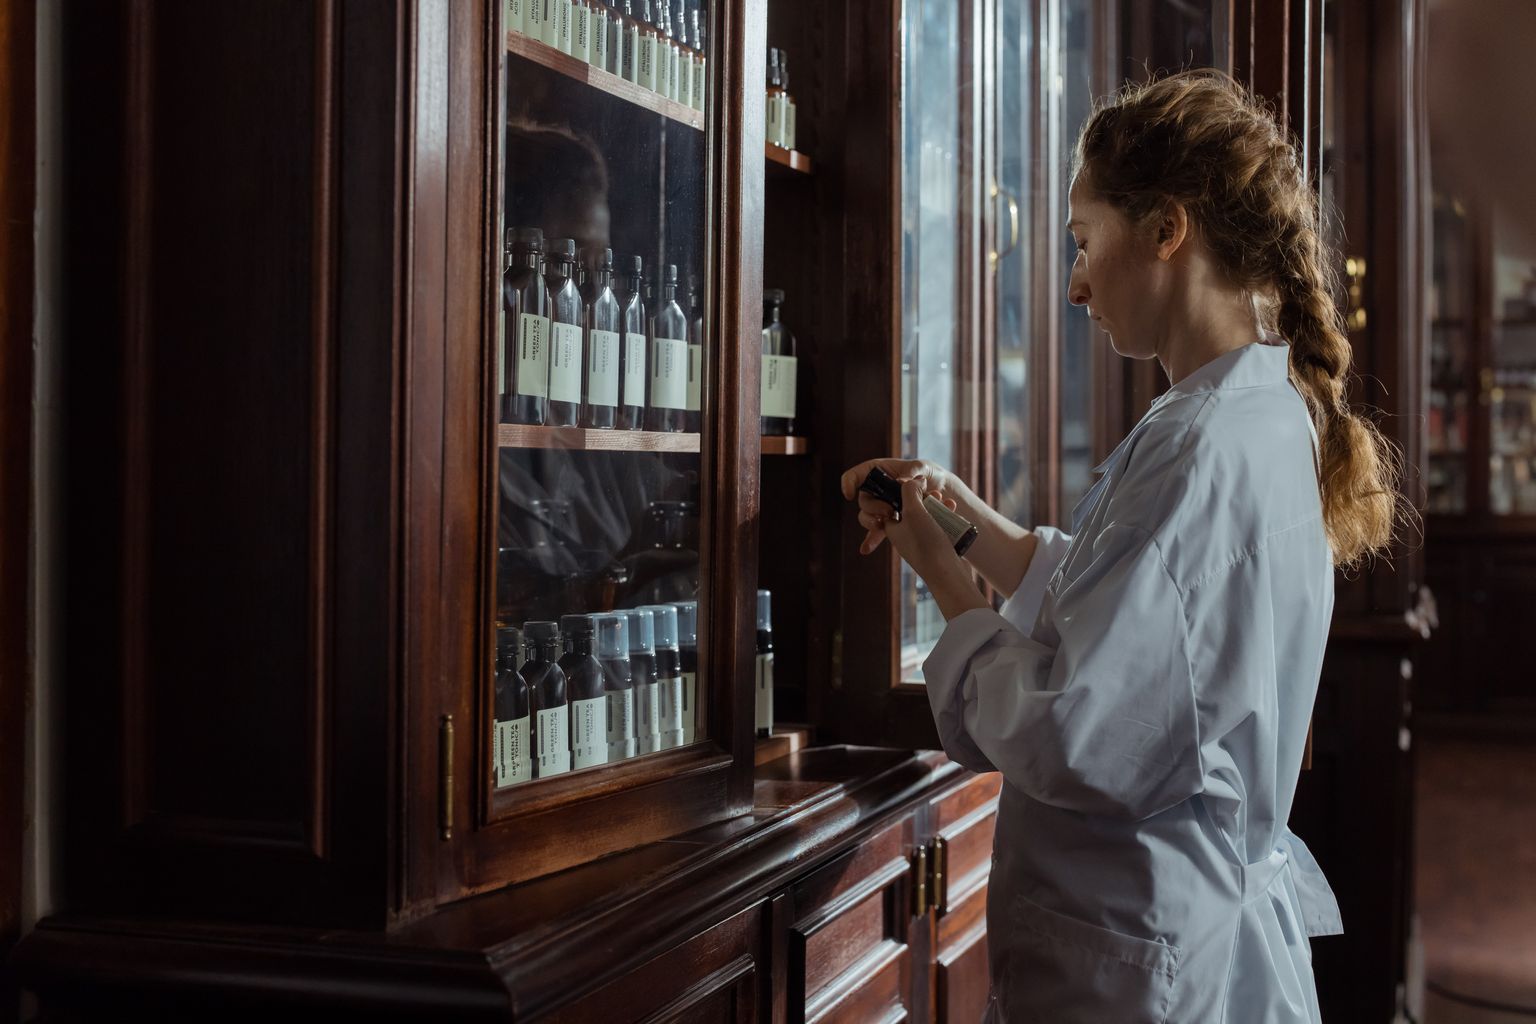 A mulher abre um armário de farmácia feito de madeira e vidro e inspecciona um medicamento.